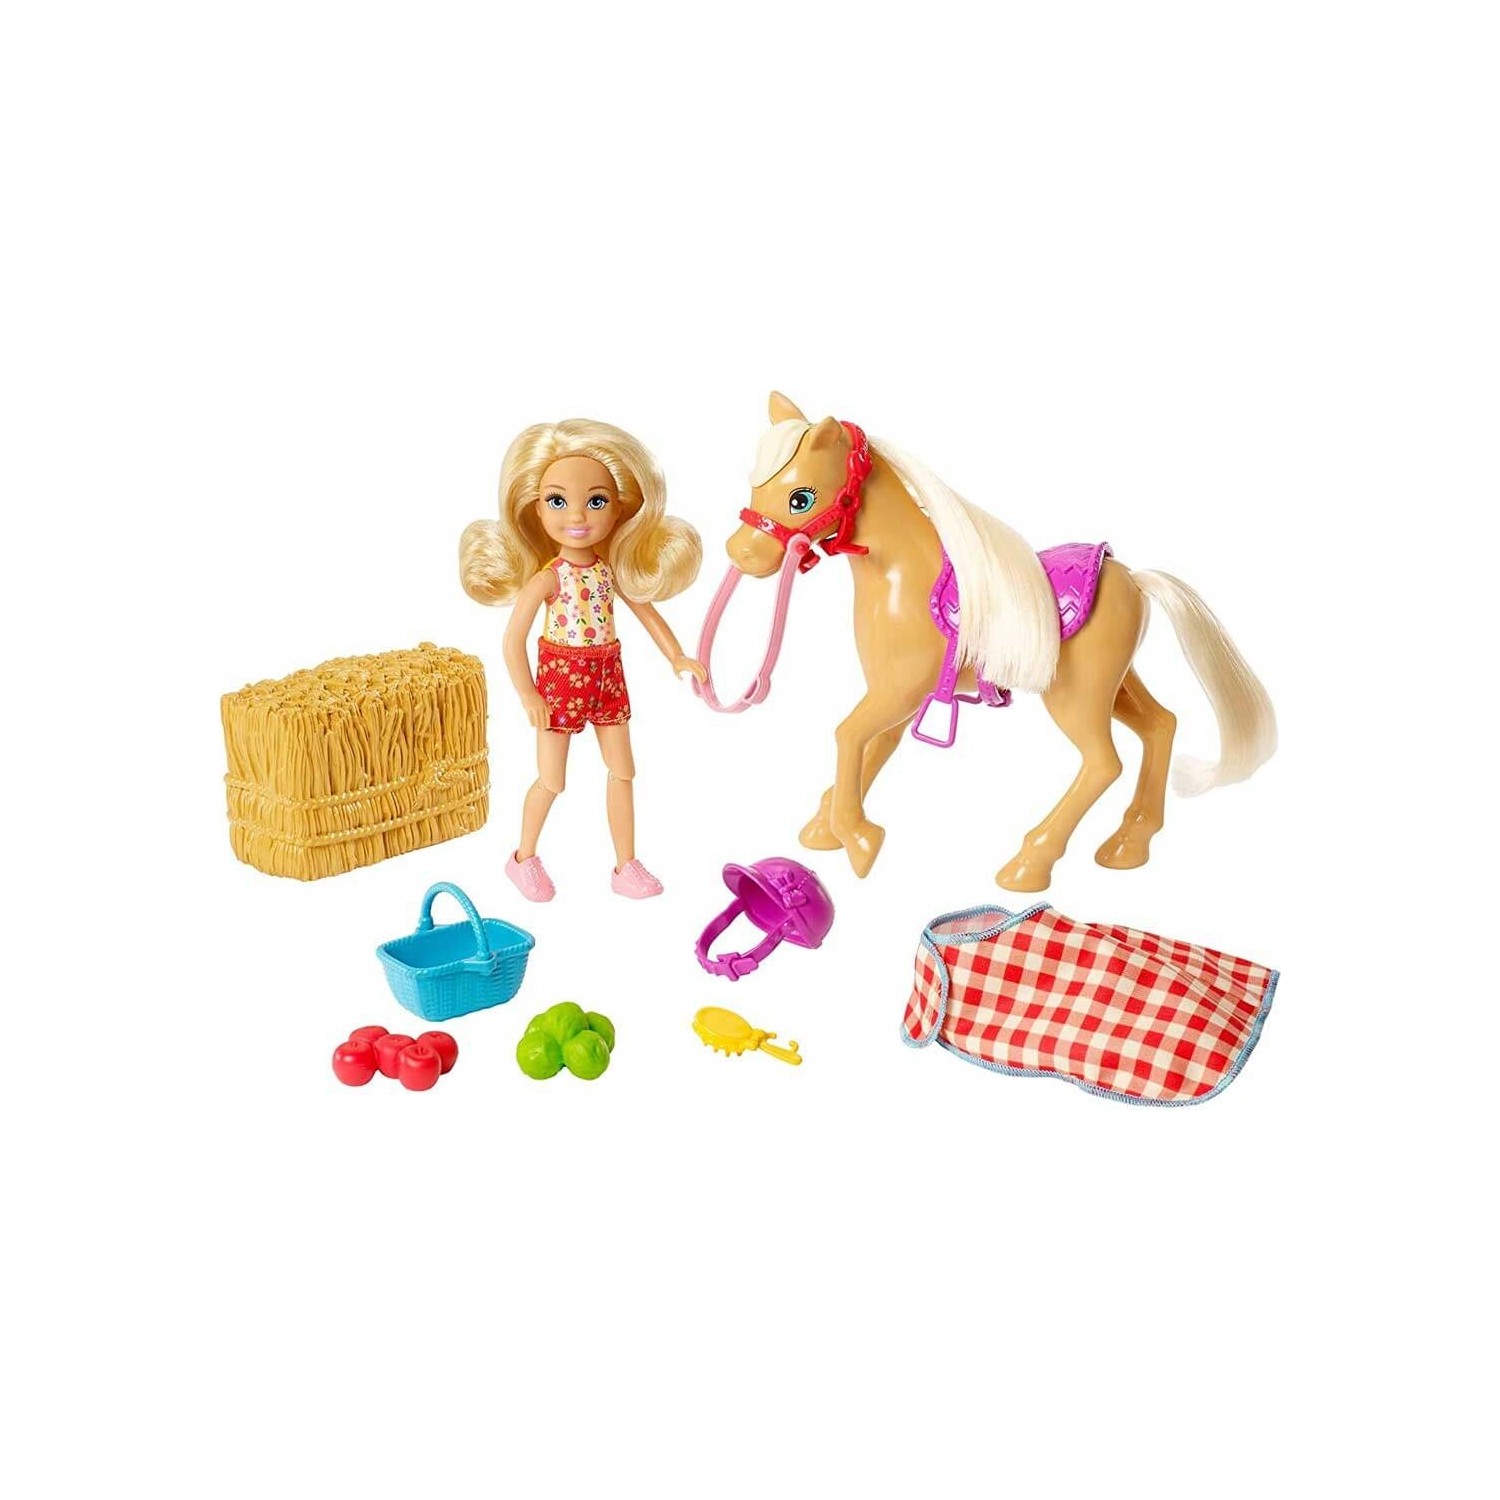 Игровой набор Barbie Челси играет с лошадью GFF50 игровой набор для пикника barbie chelsea fdb32 ghv75